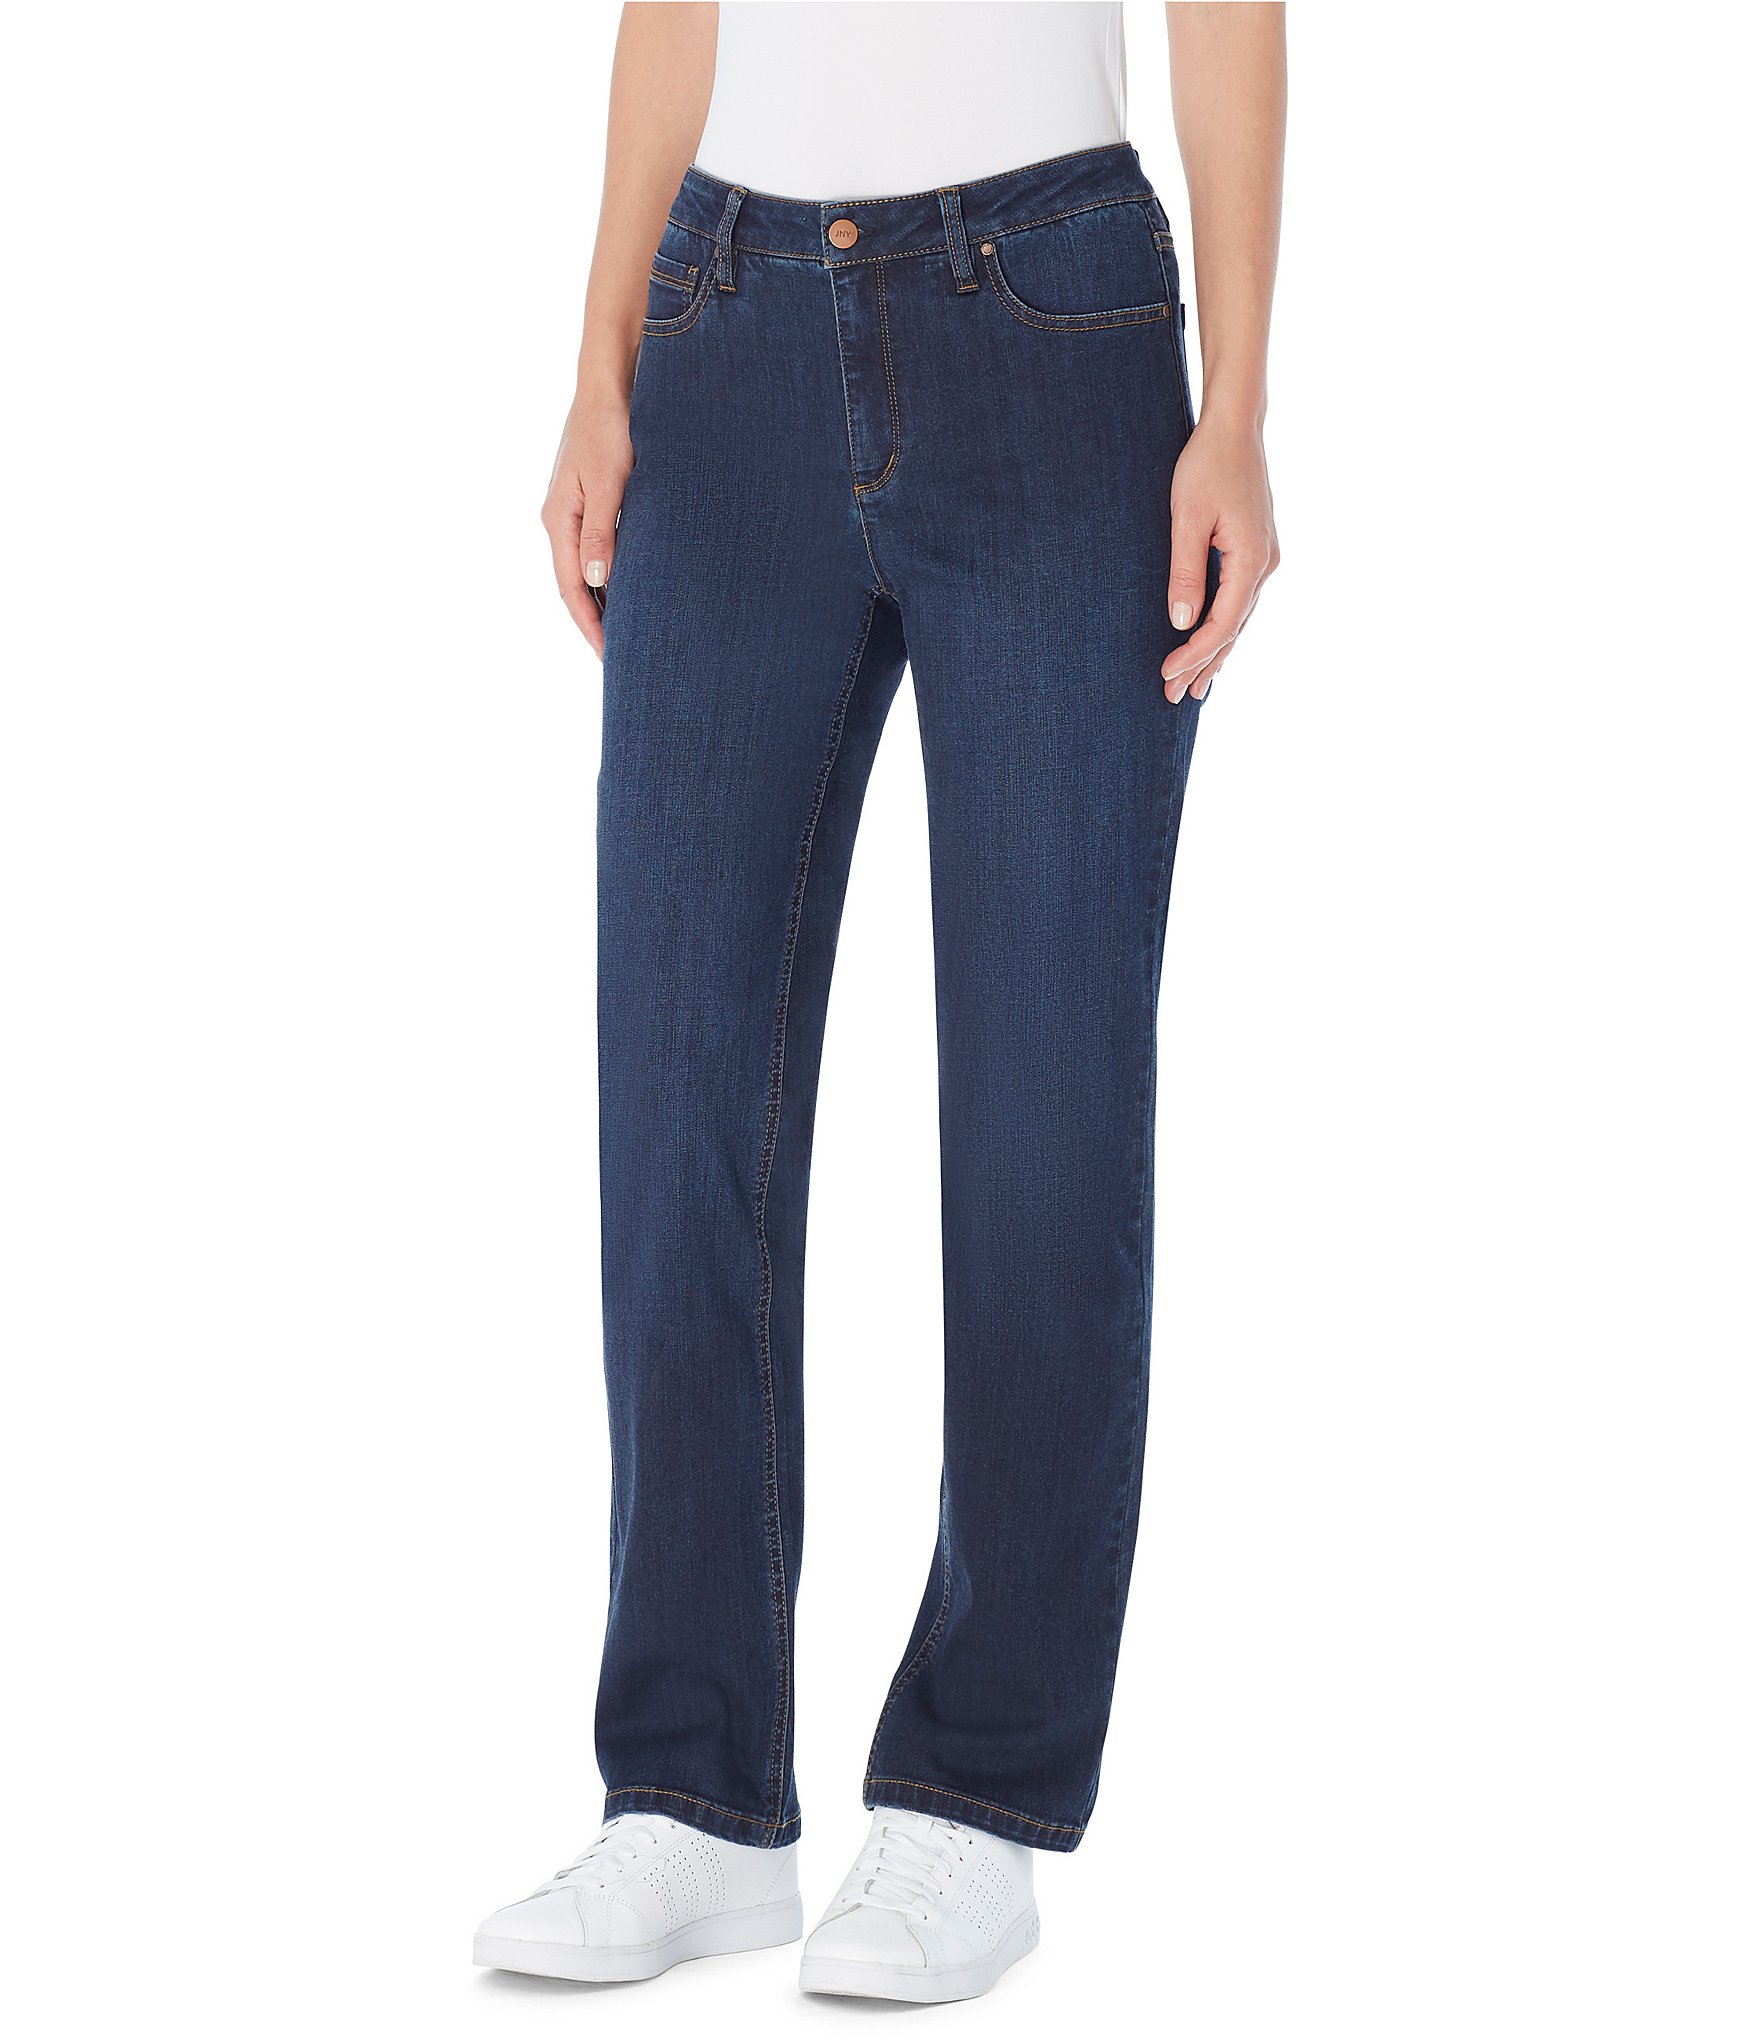 jones new york lexington straight jeans secret slimming features size 10